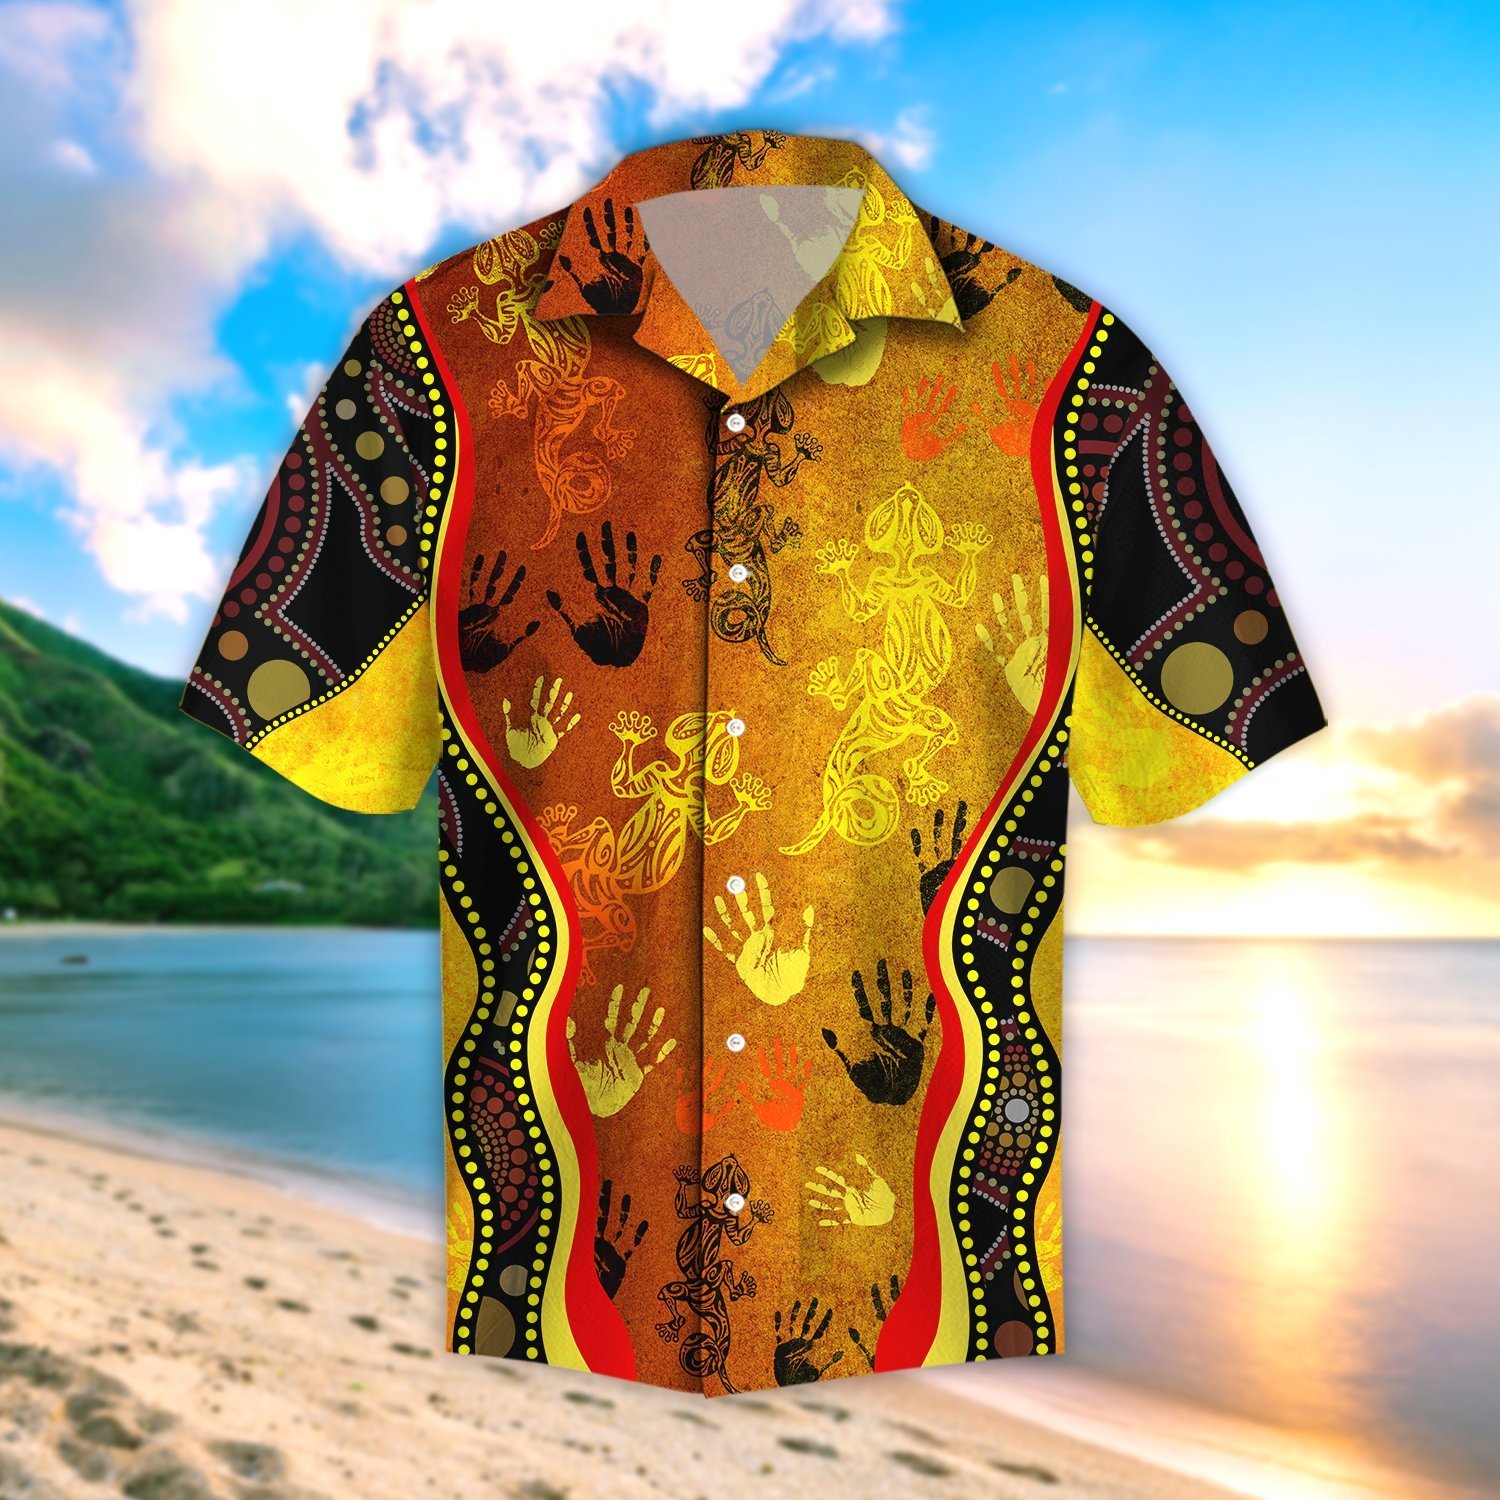 kurobase-aboriginal-australia-rock-painting-hand-lizard-art-golden-style-beach-hawaiian-shirt-for-men-and-wonmen.jpg